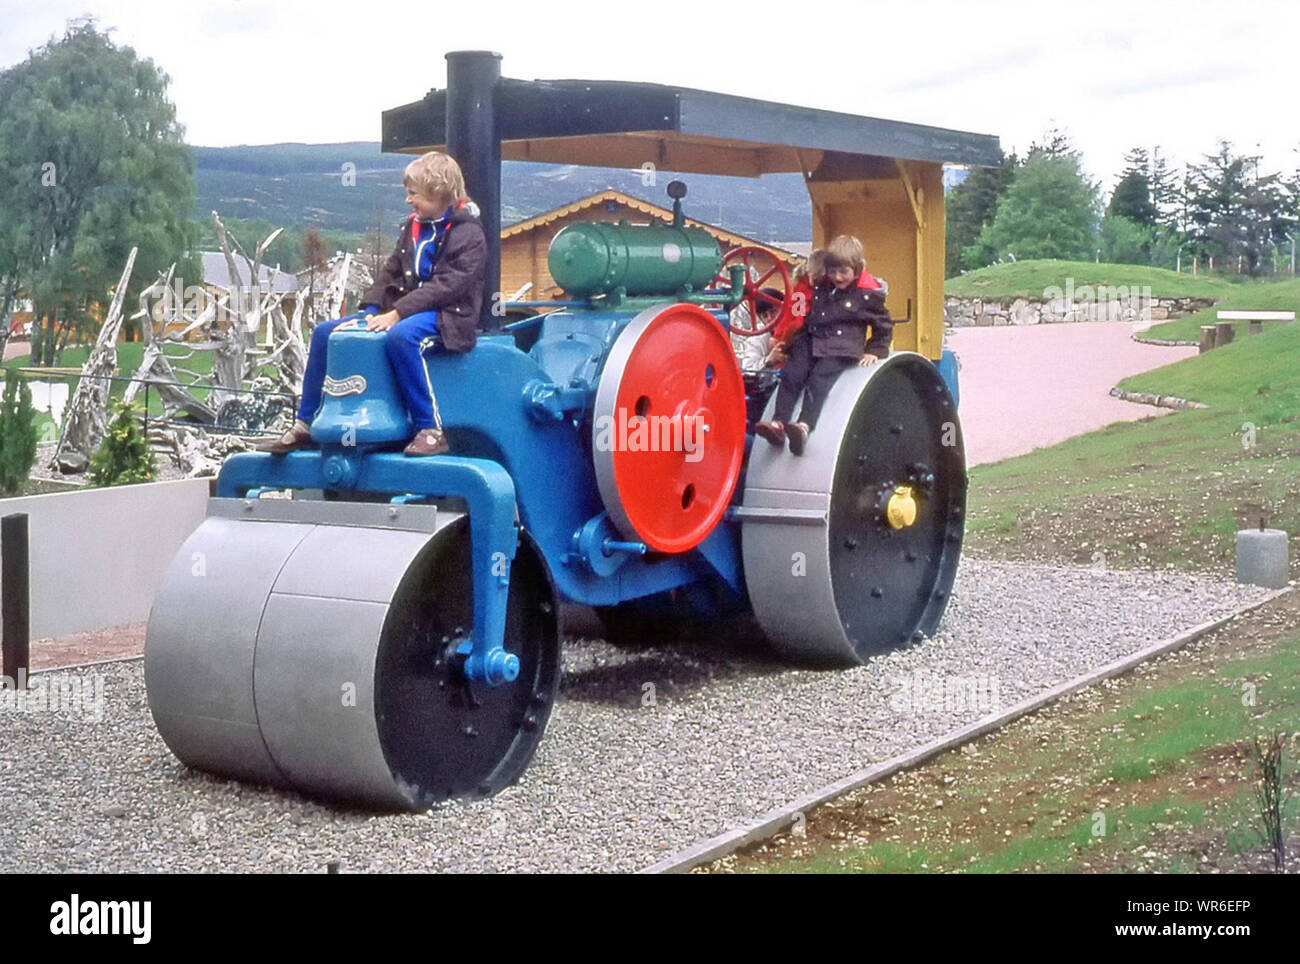 Archivio storico anni '70 famiglia touring vacanza rullo a vapore colorato in Parco giochi per bambini per due ragazzi e mamma con ragazza sul retro Come eravamo negli anni '70 Aviemore Scottish Highlands UK Foto Stock